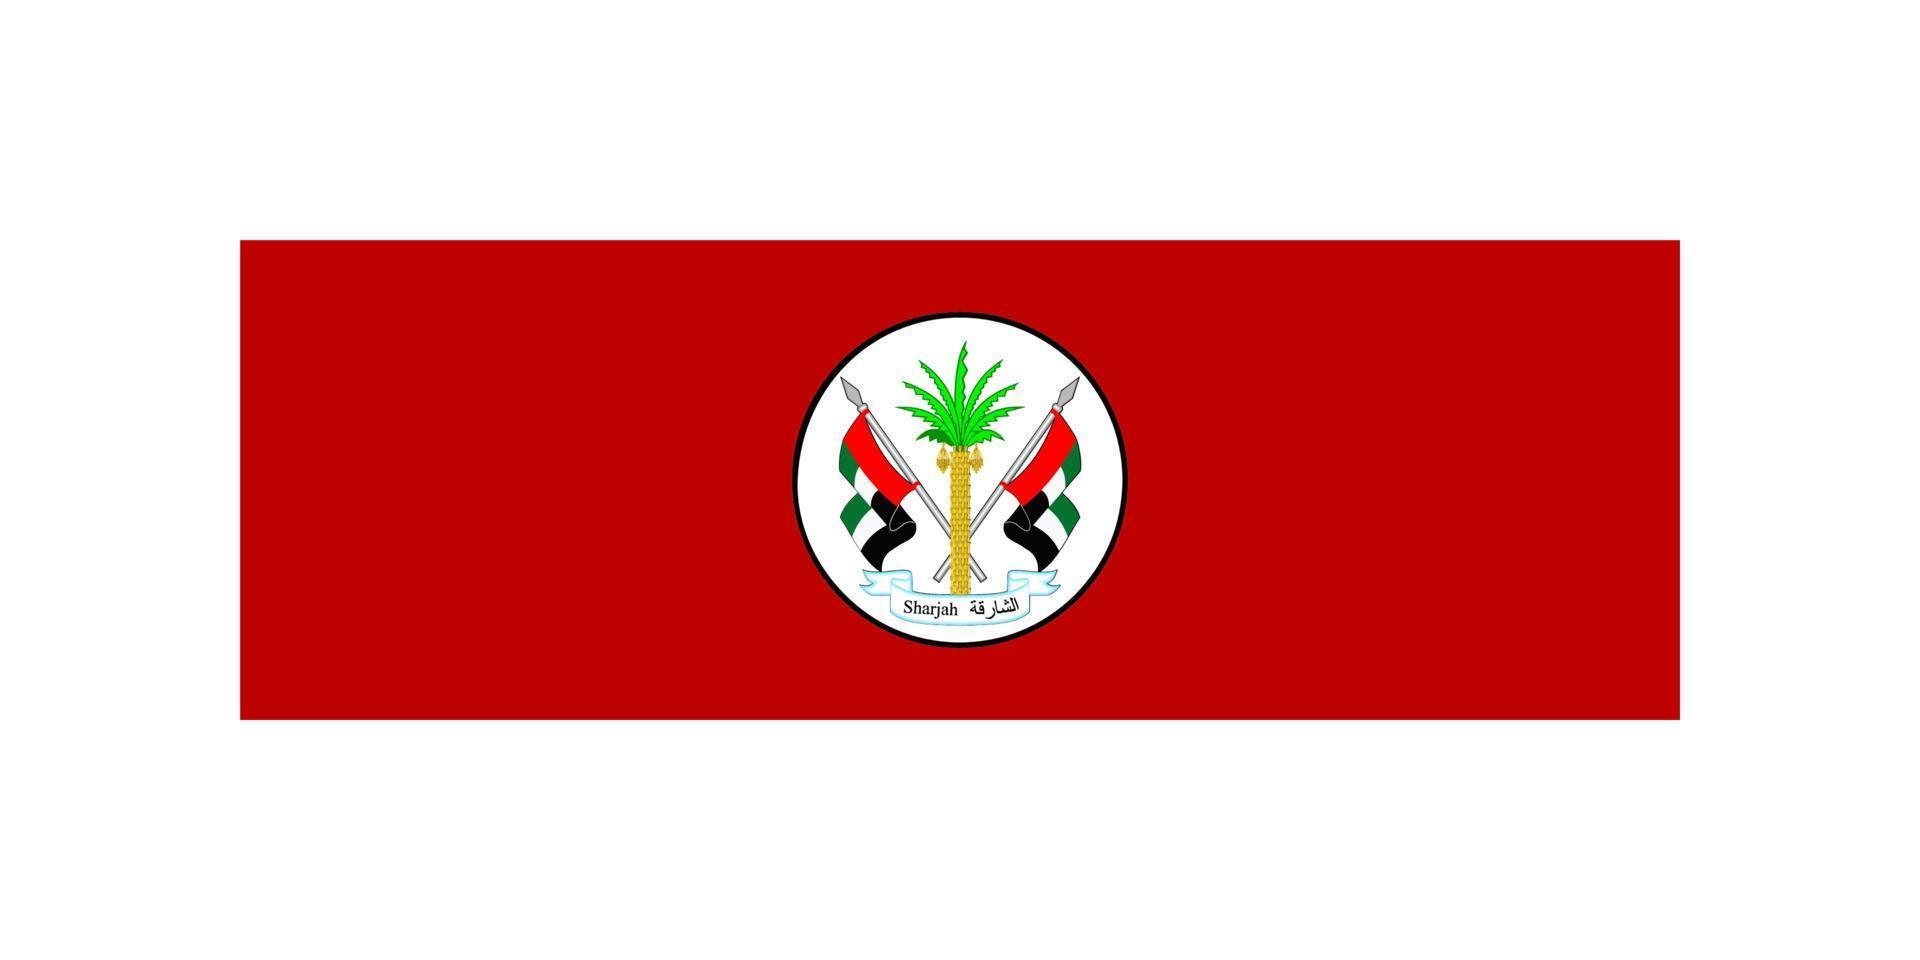 Facile drapeau émirat de le uni arabe émirats vecteur